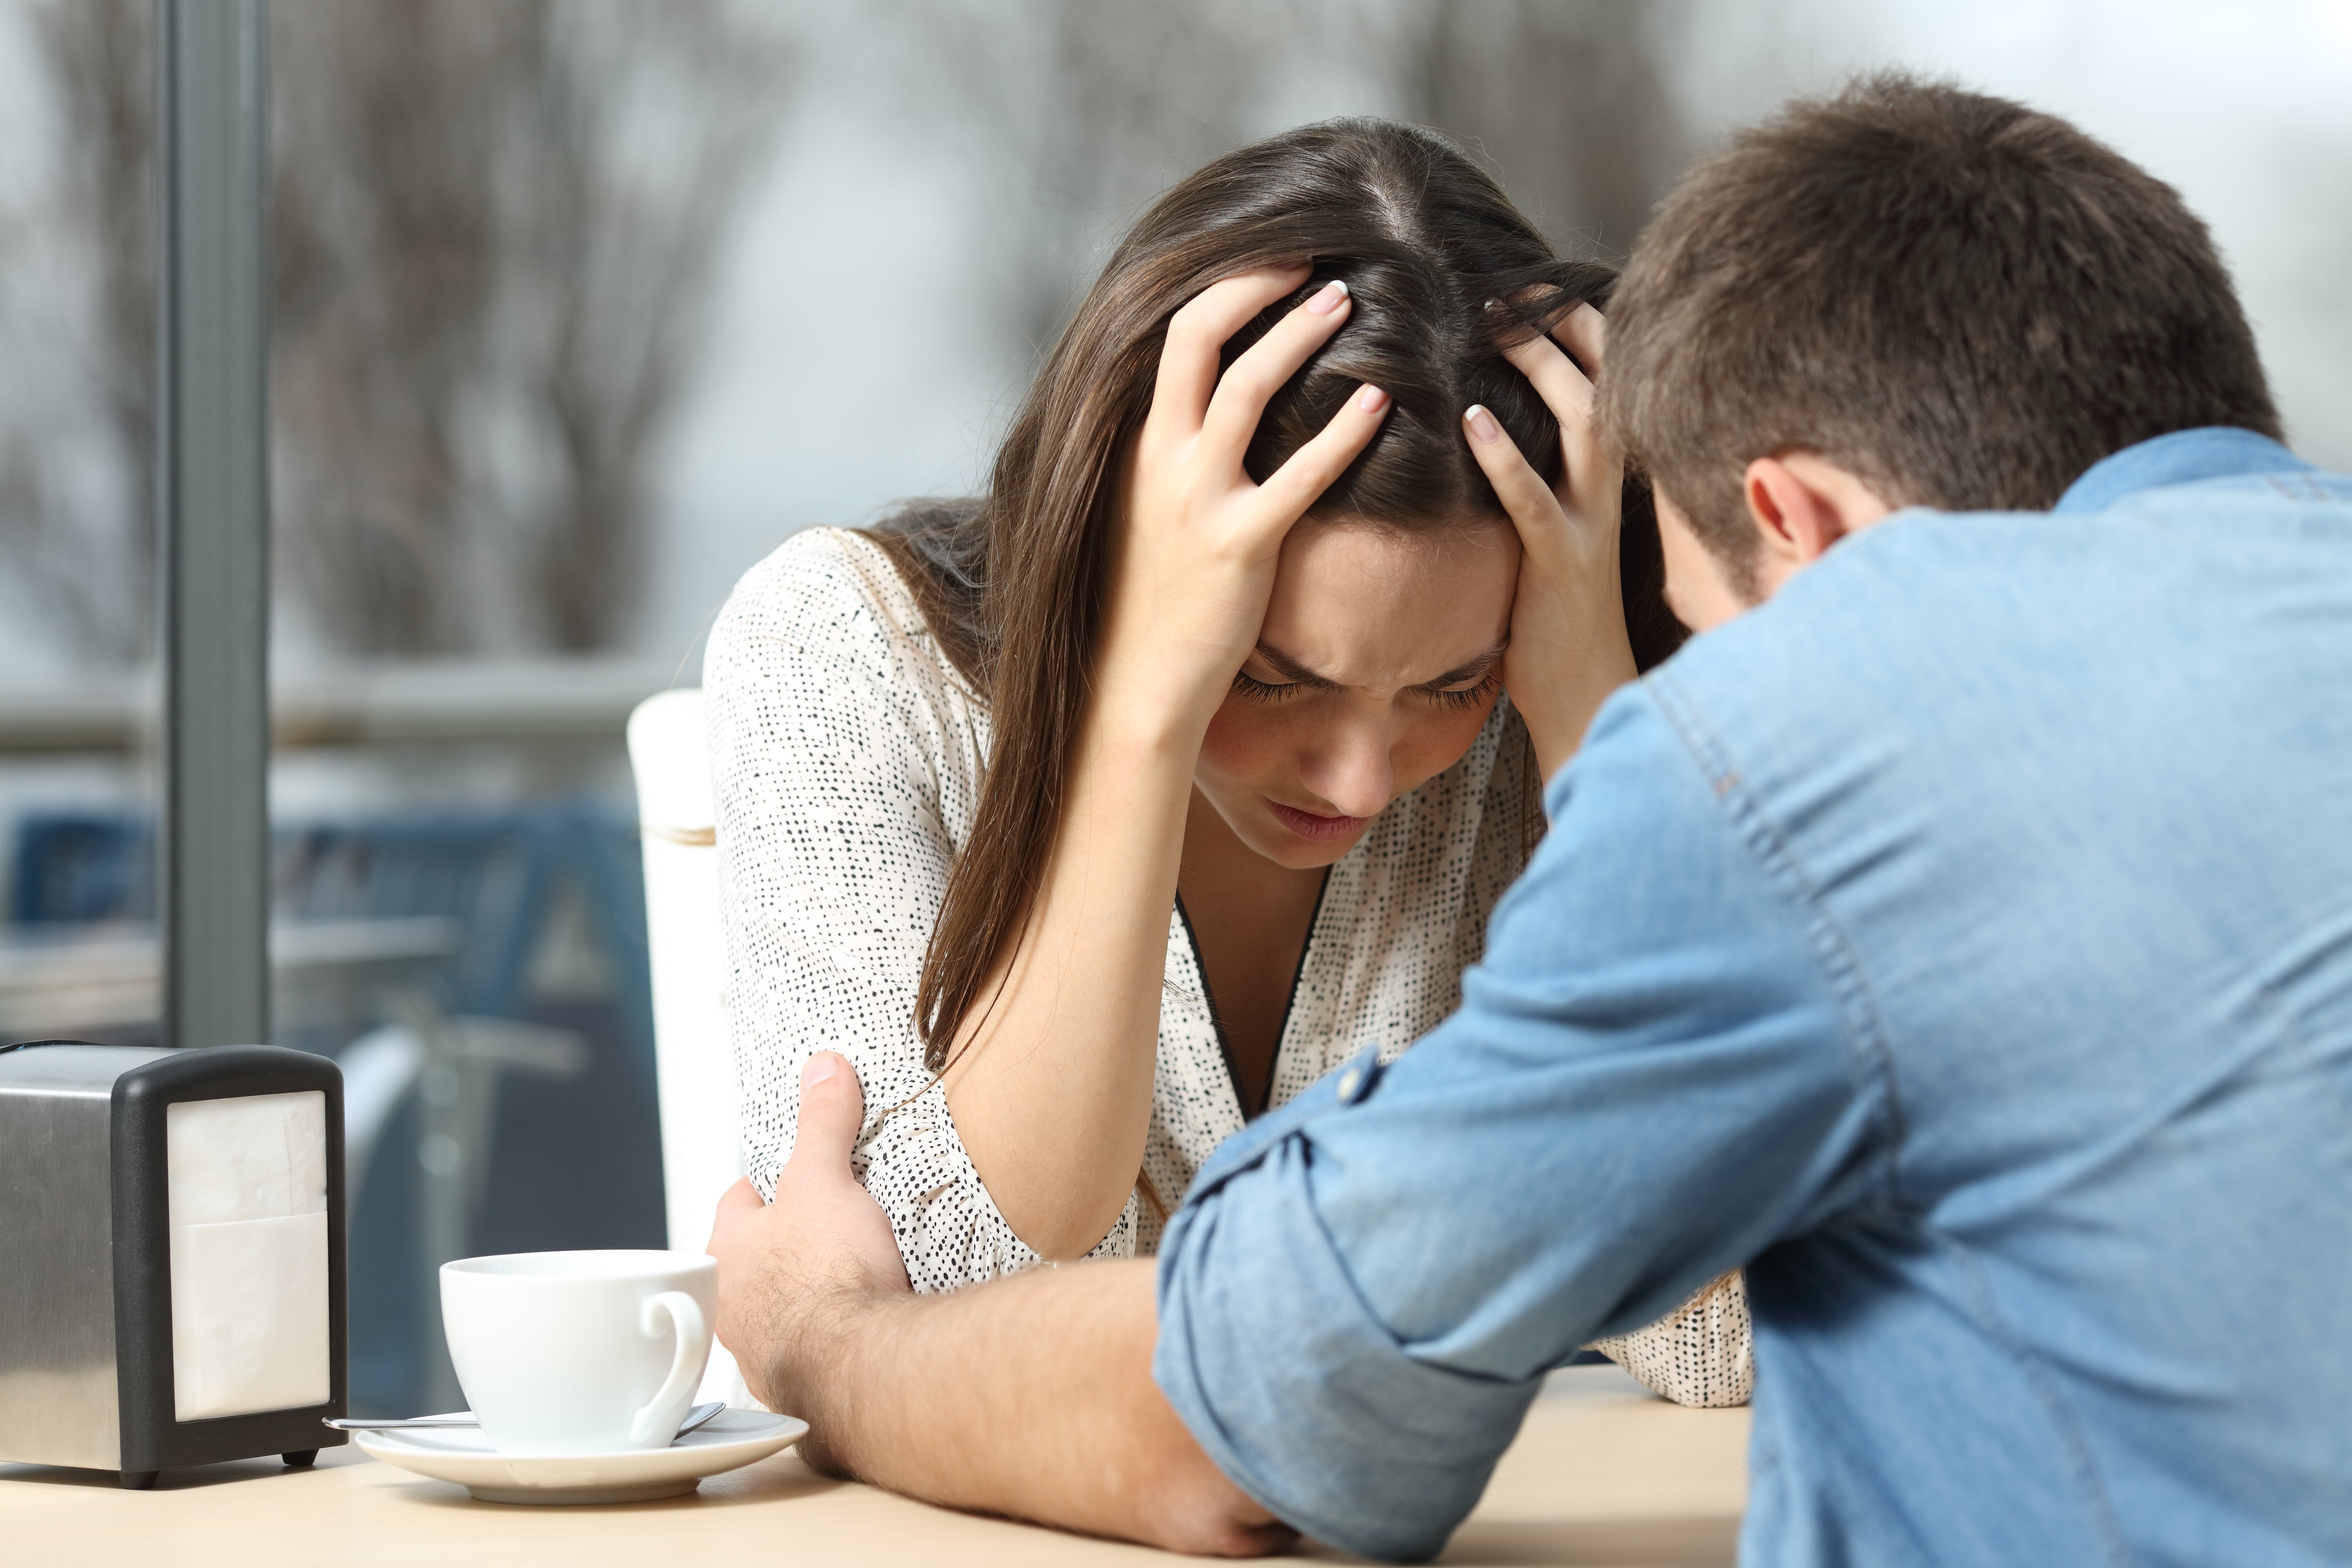 Mann tröstet eine traurige depressive Frau, die Hilfe braucht | Quelle: Shutterstock